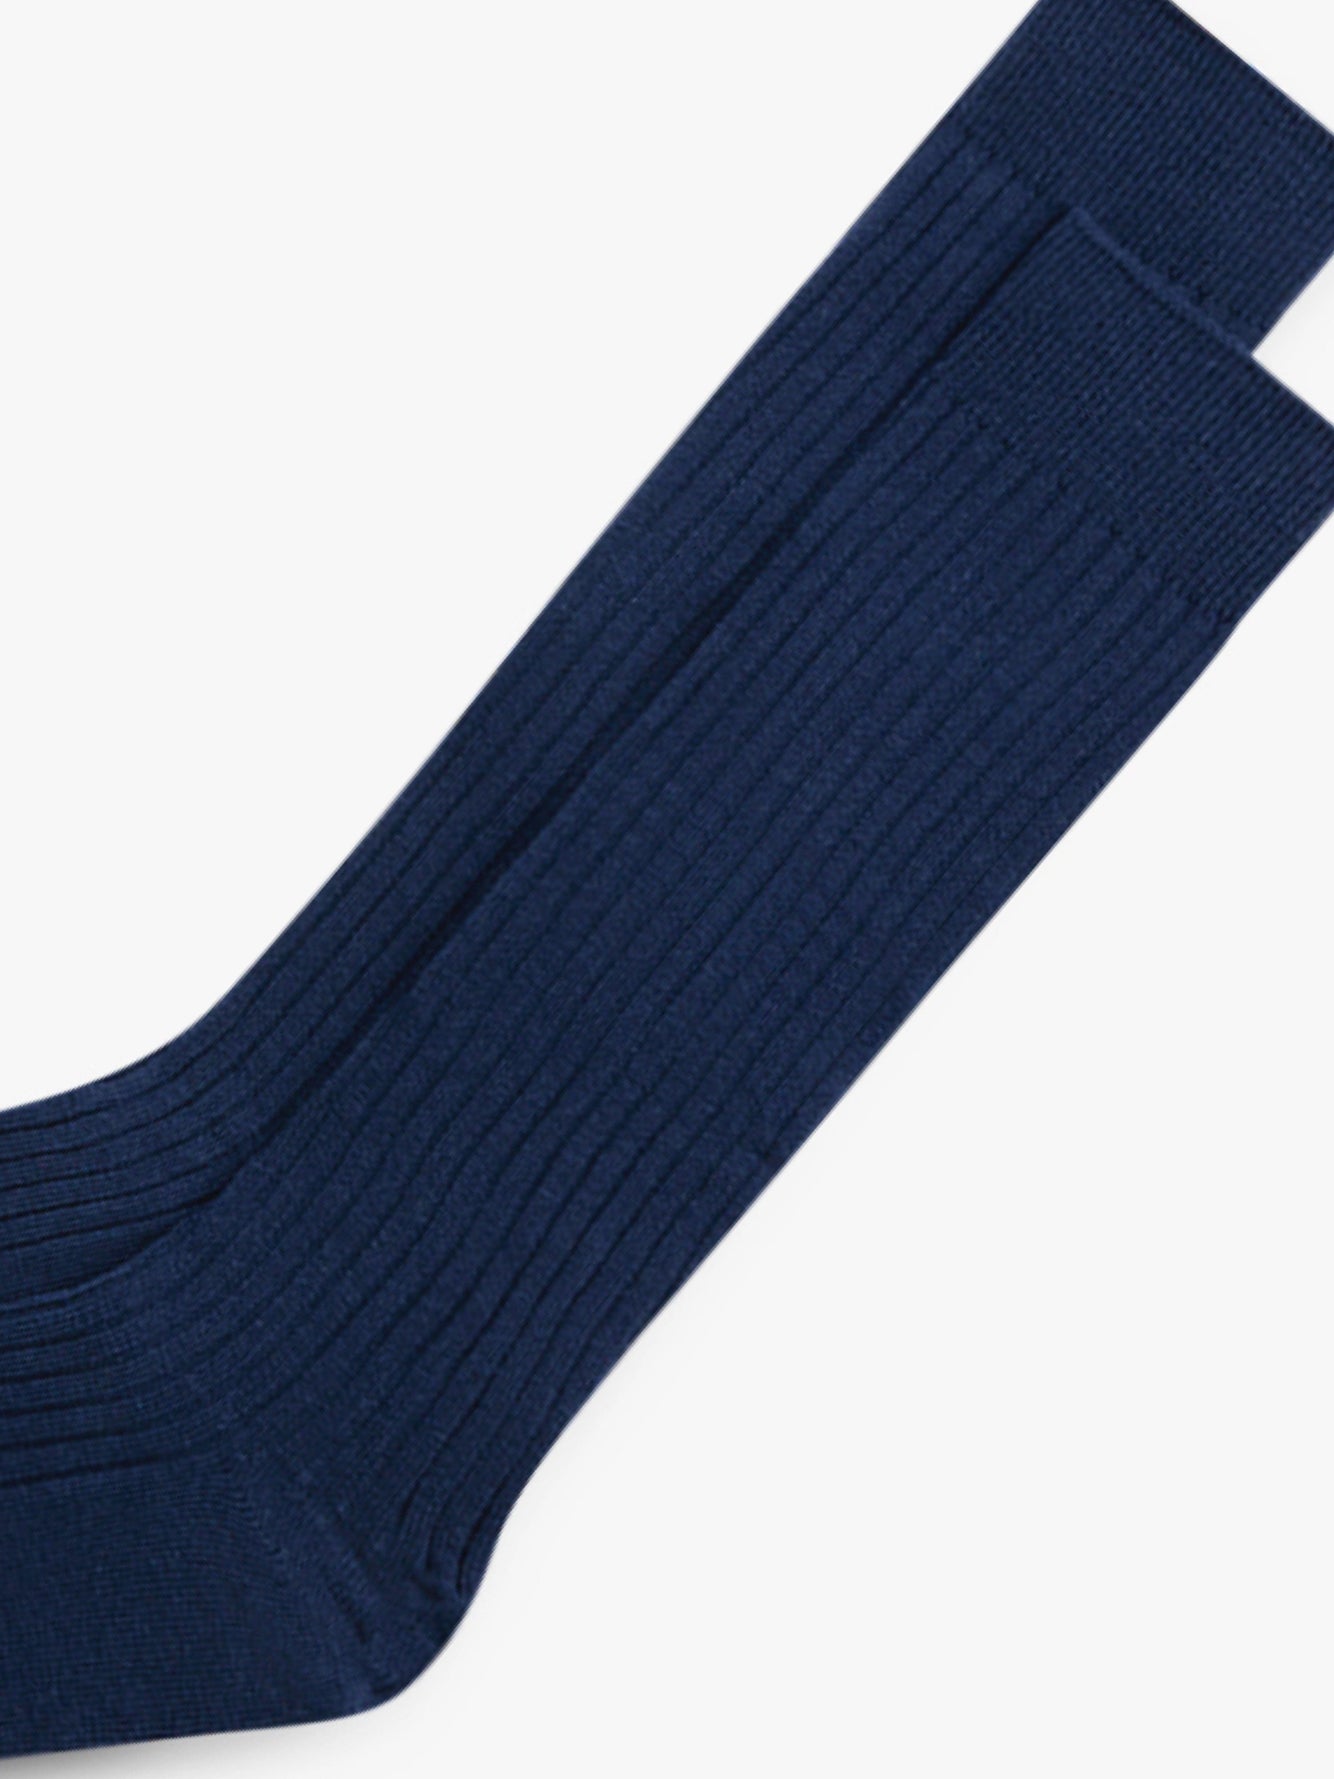 Grand Le Mar - Navy Socks Ribbed Cotton Pima